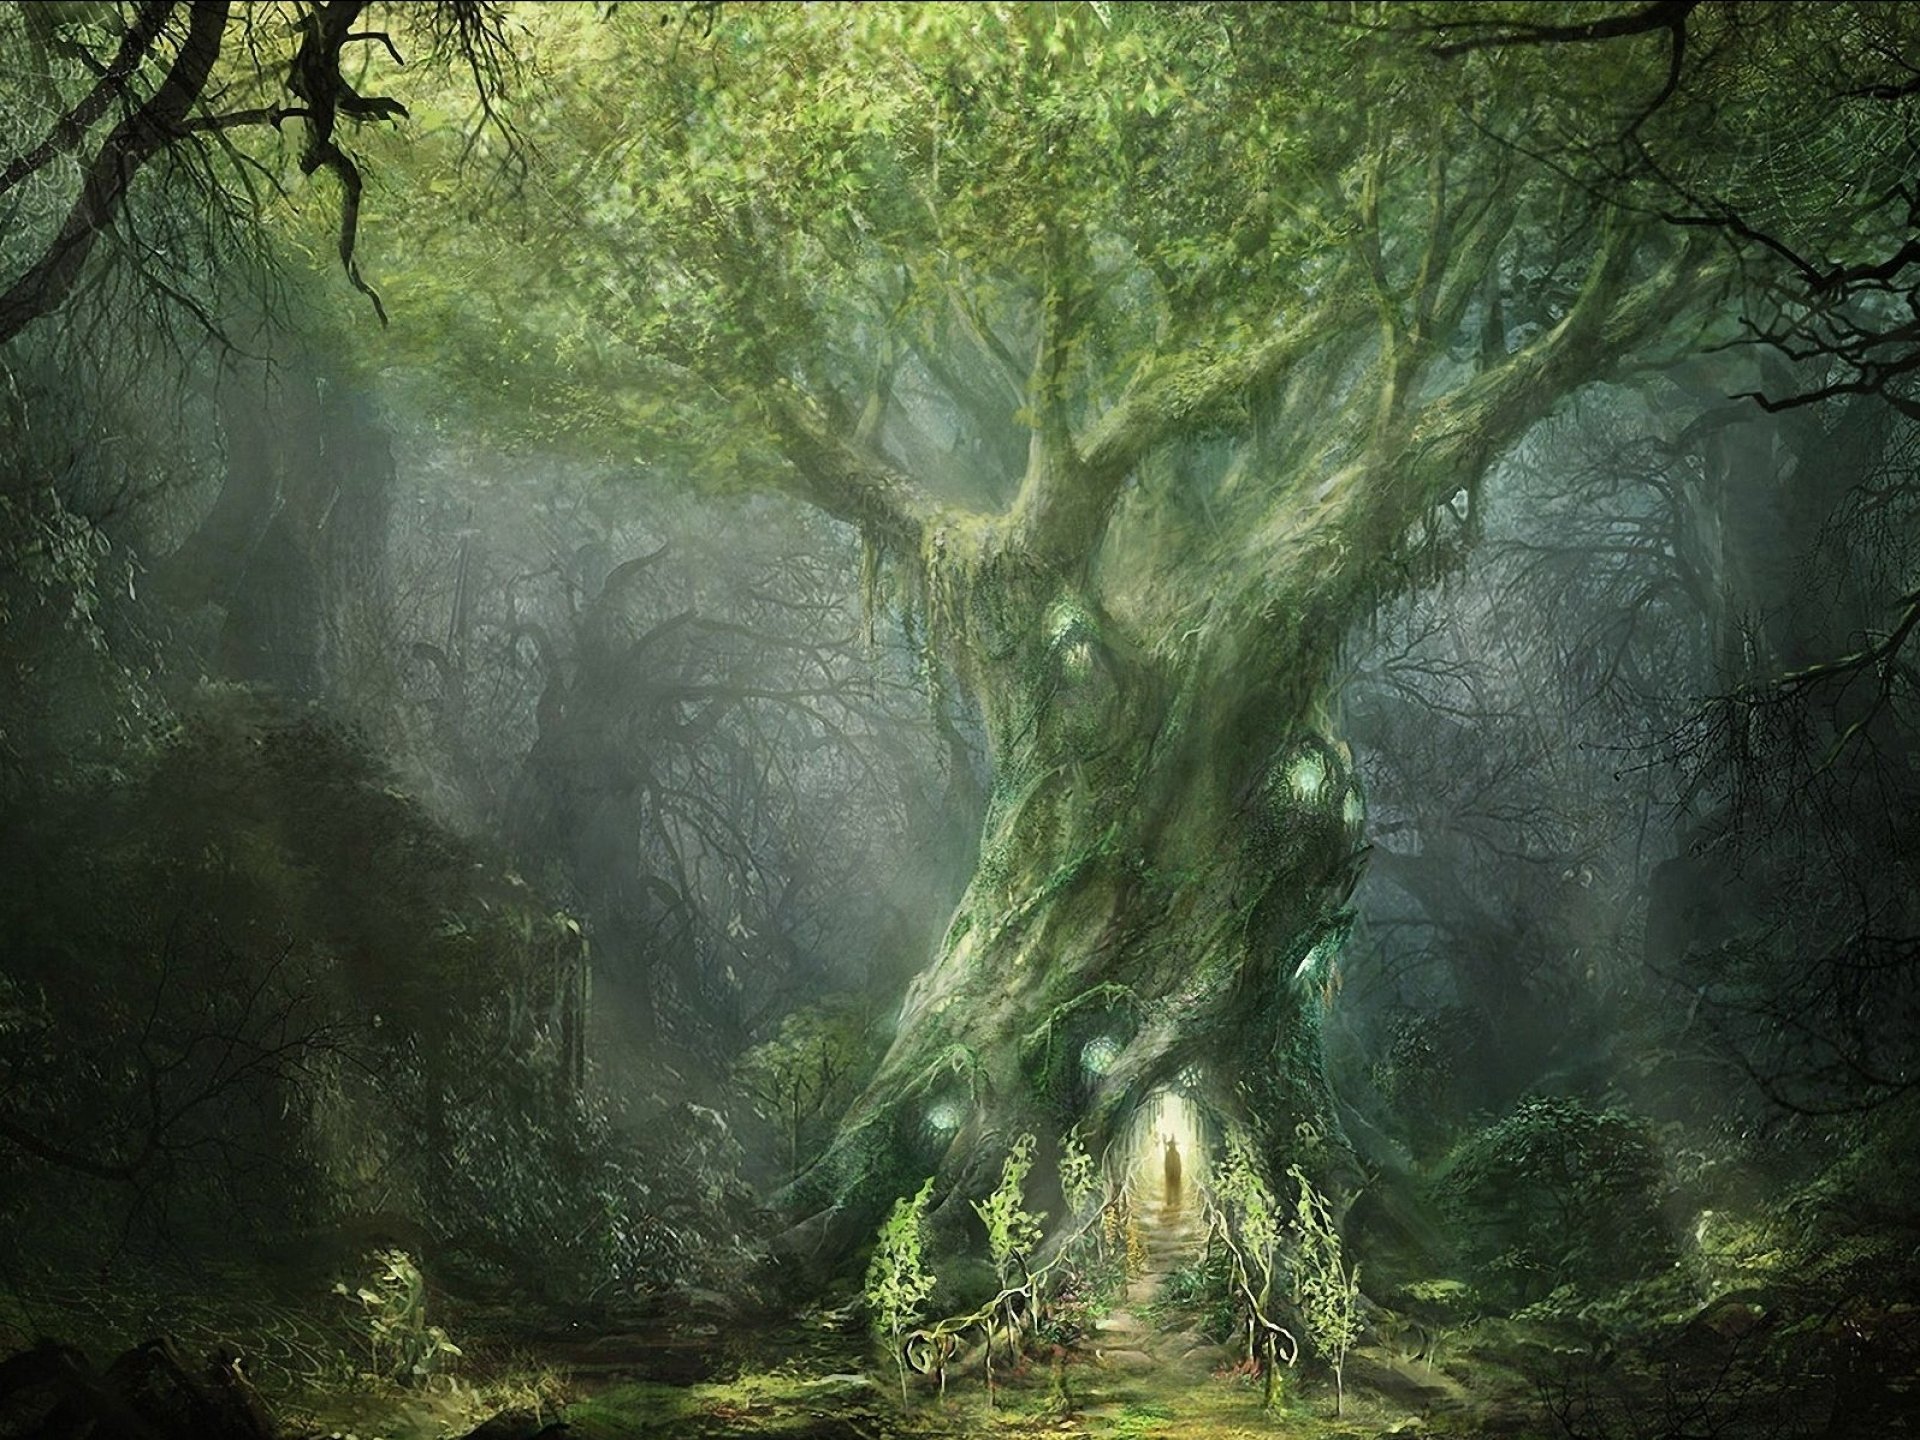 artwork, Fantasy, Magical, Art, Forest, Tree, Landscape, Nature